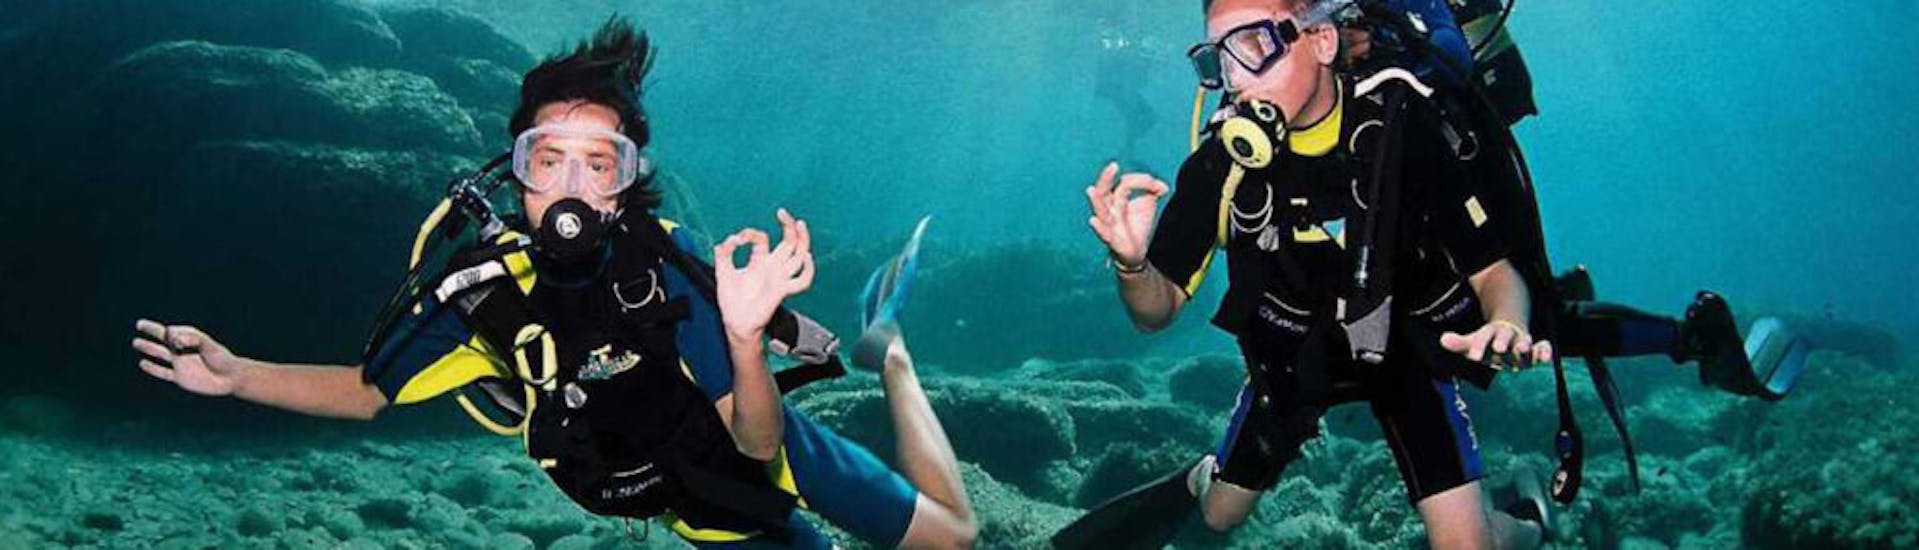 Foto van twee duikers die gebarentaal doen onder water tijdens PADI Open Water Duikcursus in Ibiza met Arenal Diving & Boat Trips Ibiza.